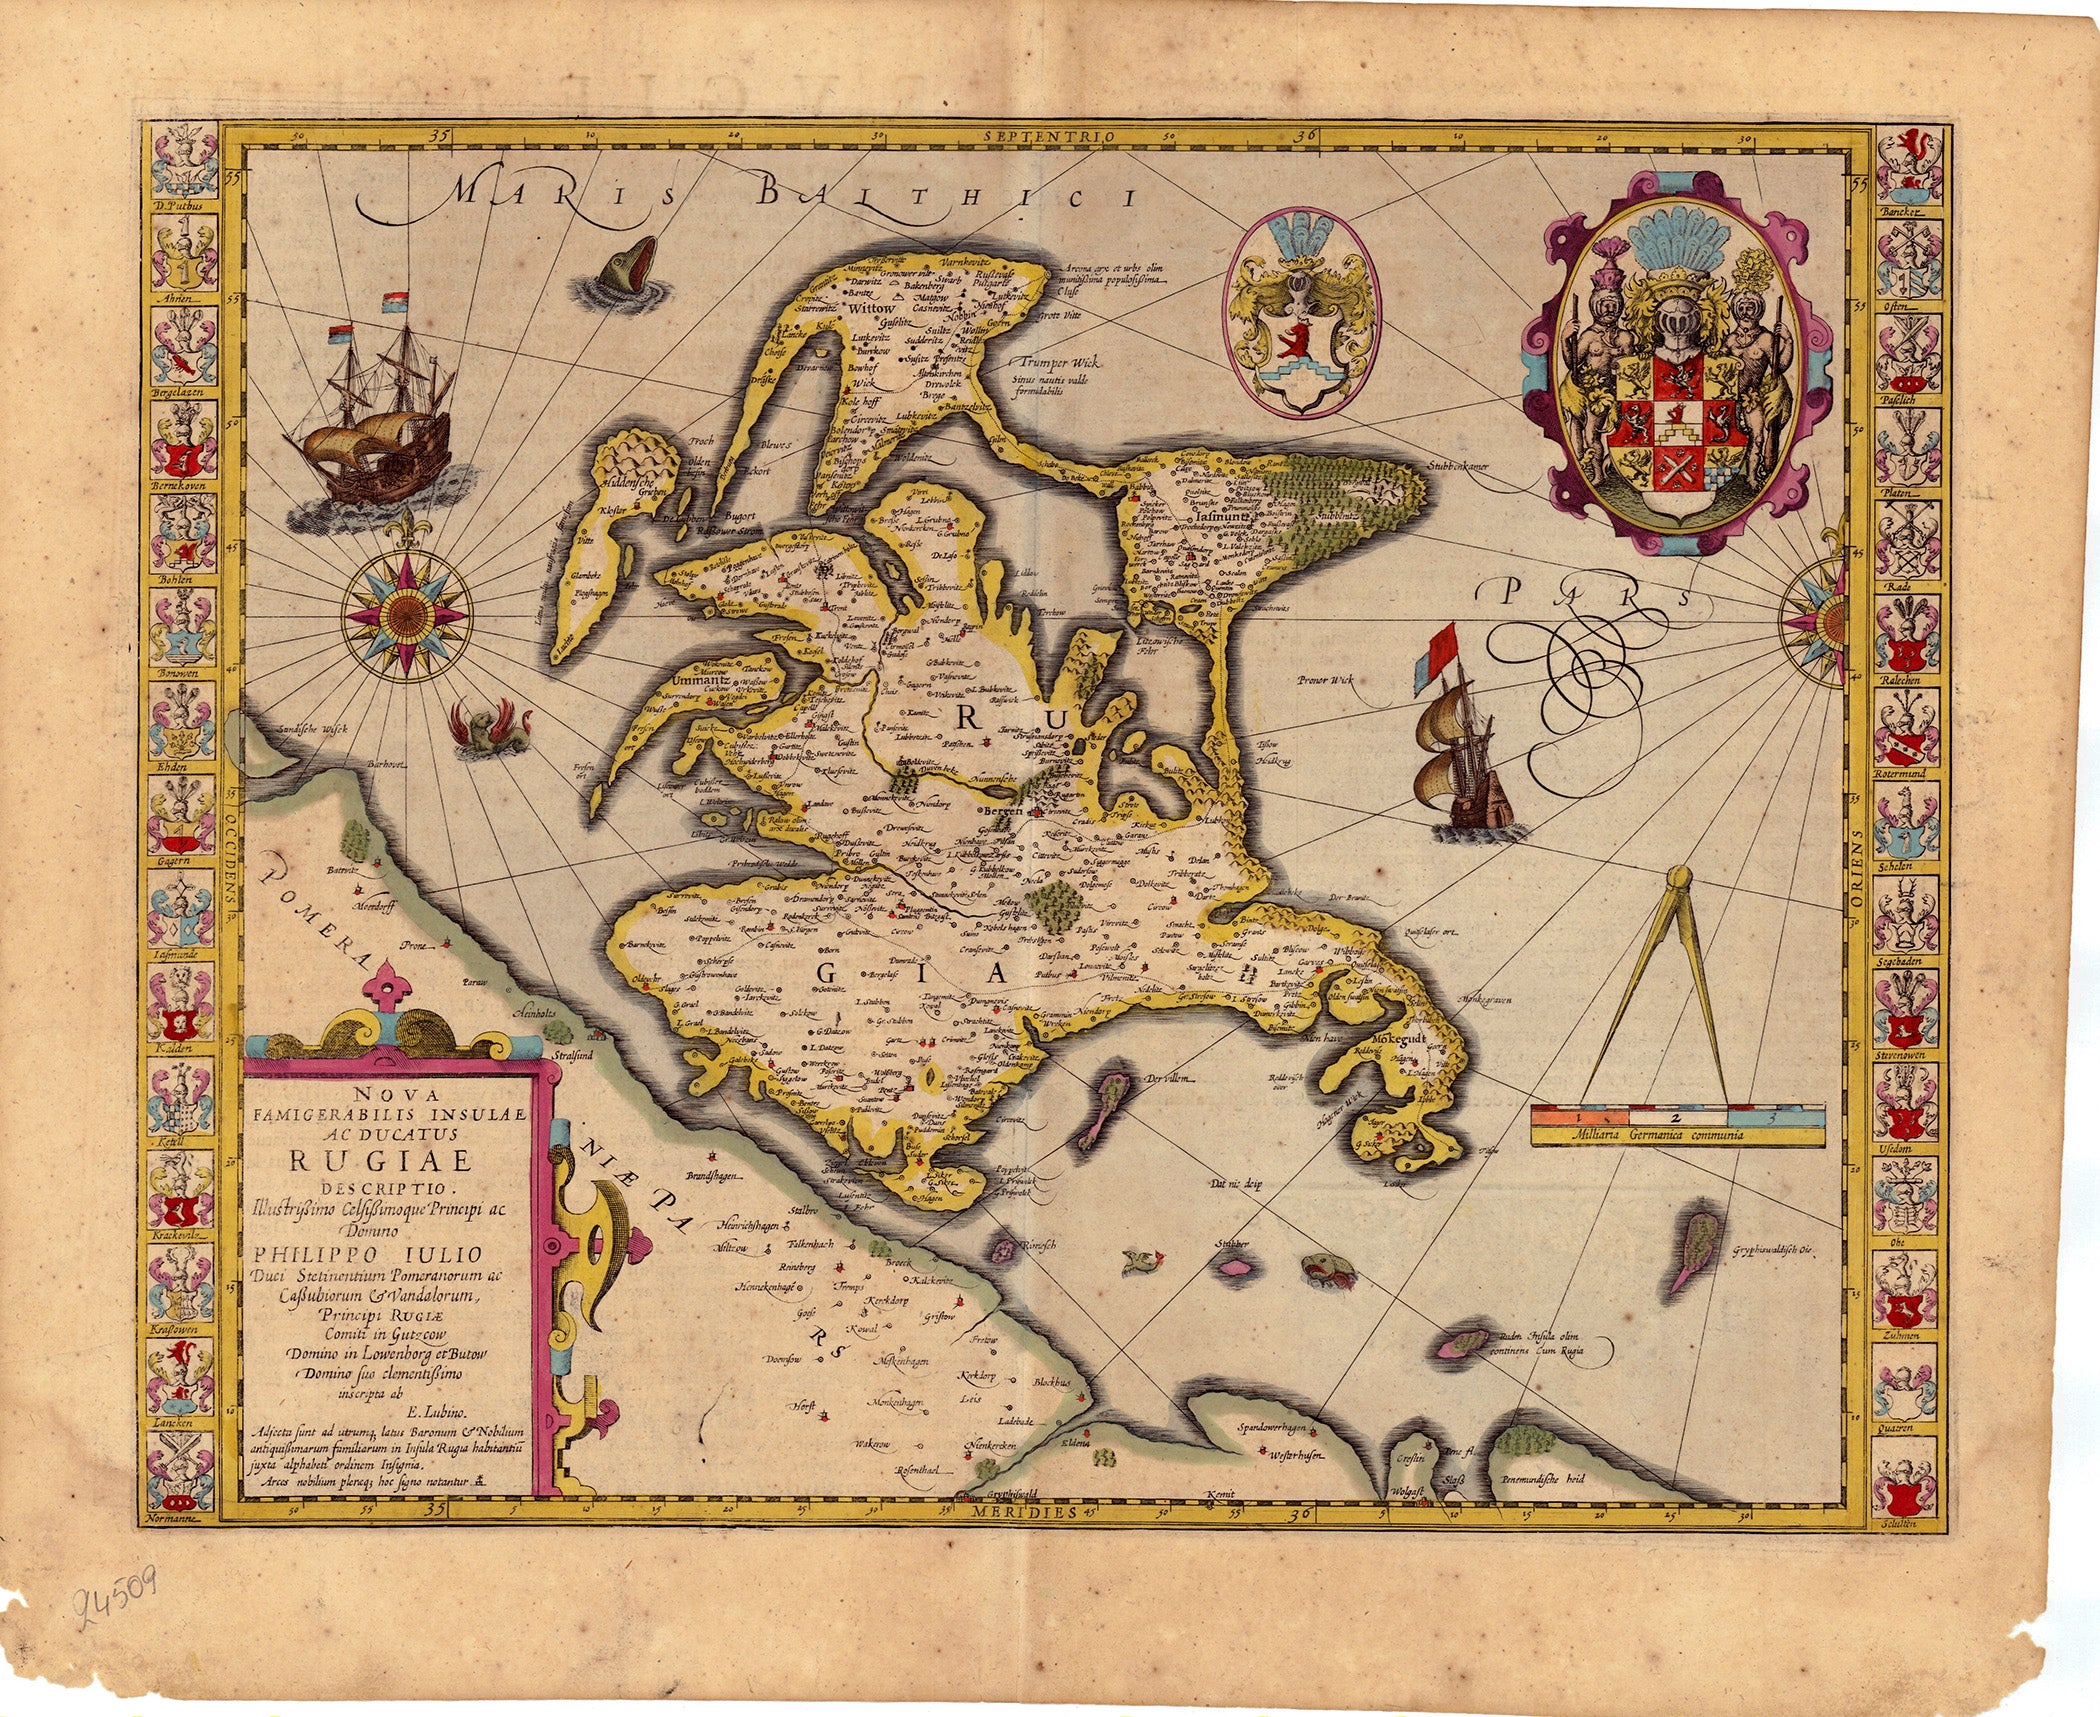 Mercator - Hondius: Nova Famigerabilis Insulae ac Ducatus Rugiae Descripto 1609